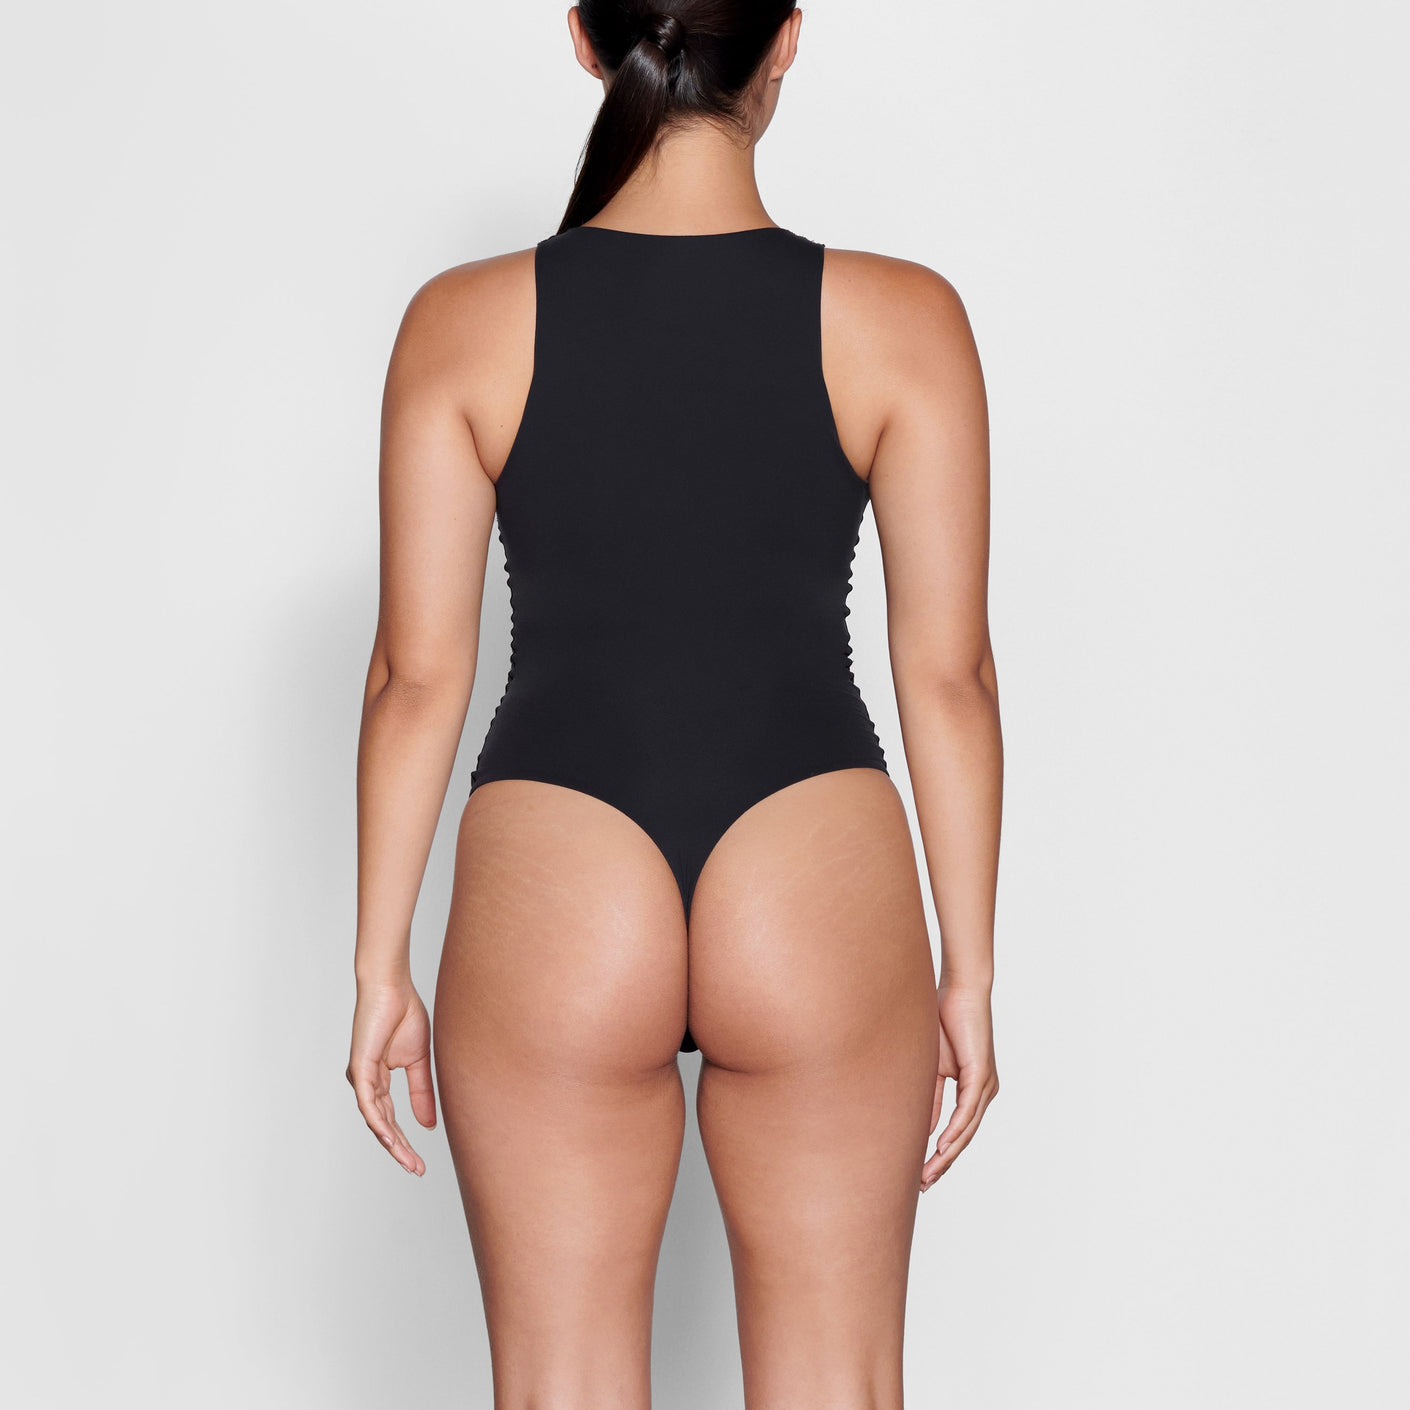 Sleeveless Bodysuits For Women